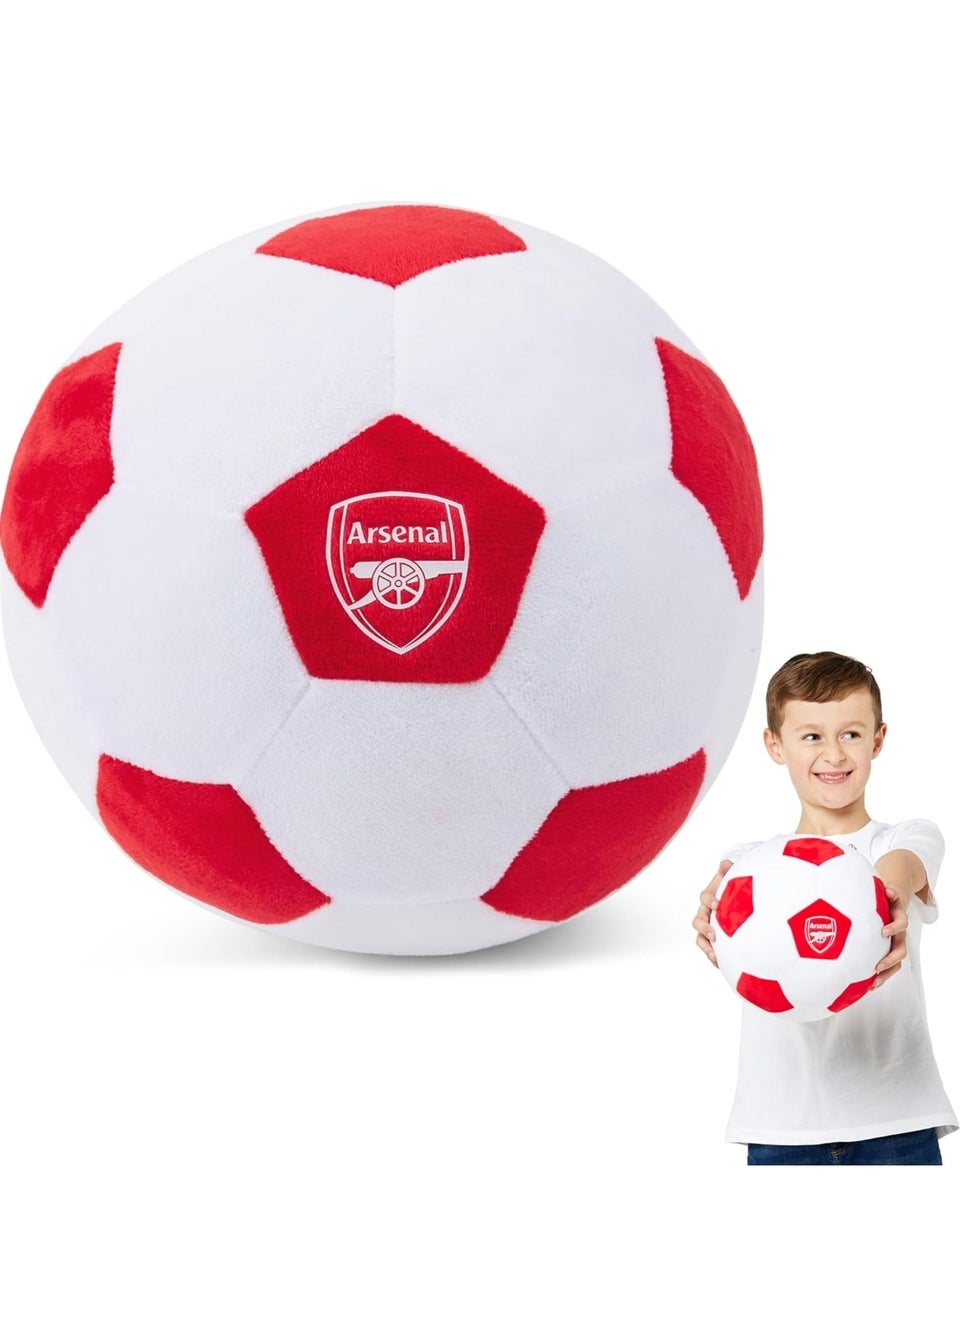 Arsenal FC Plush Size 5 Football